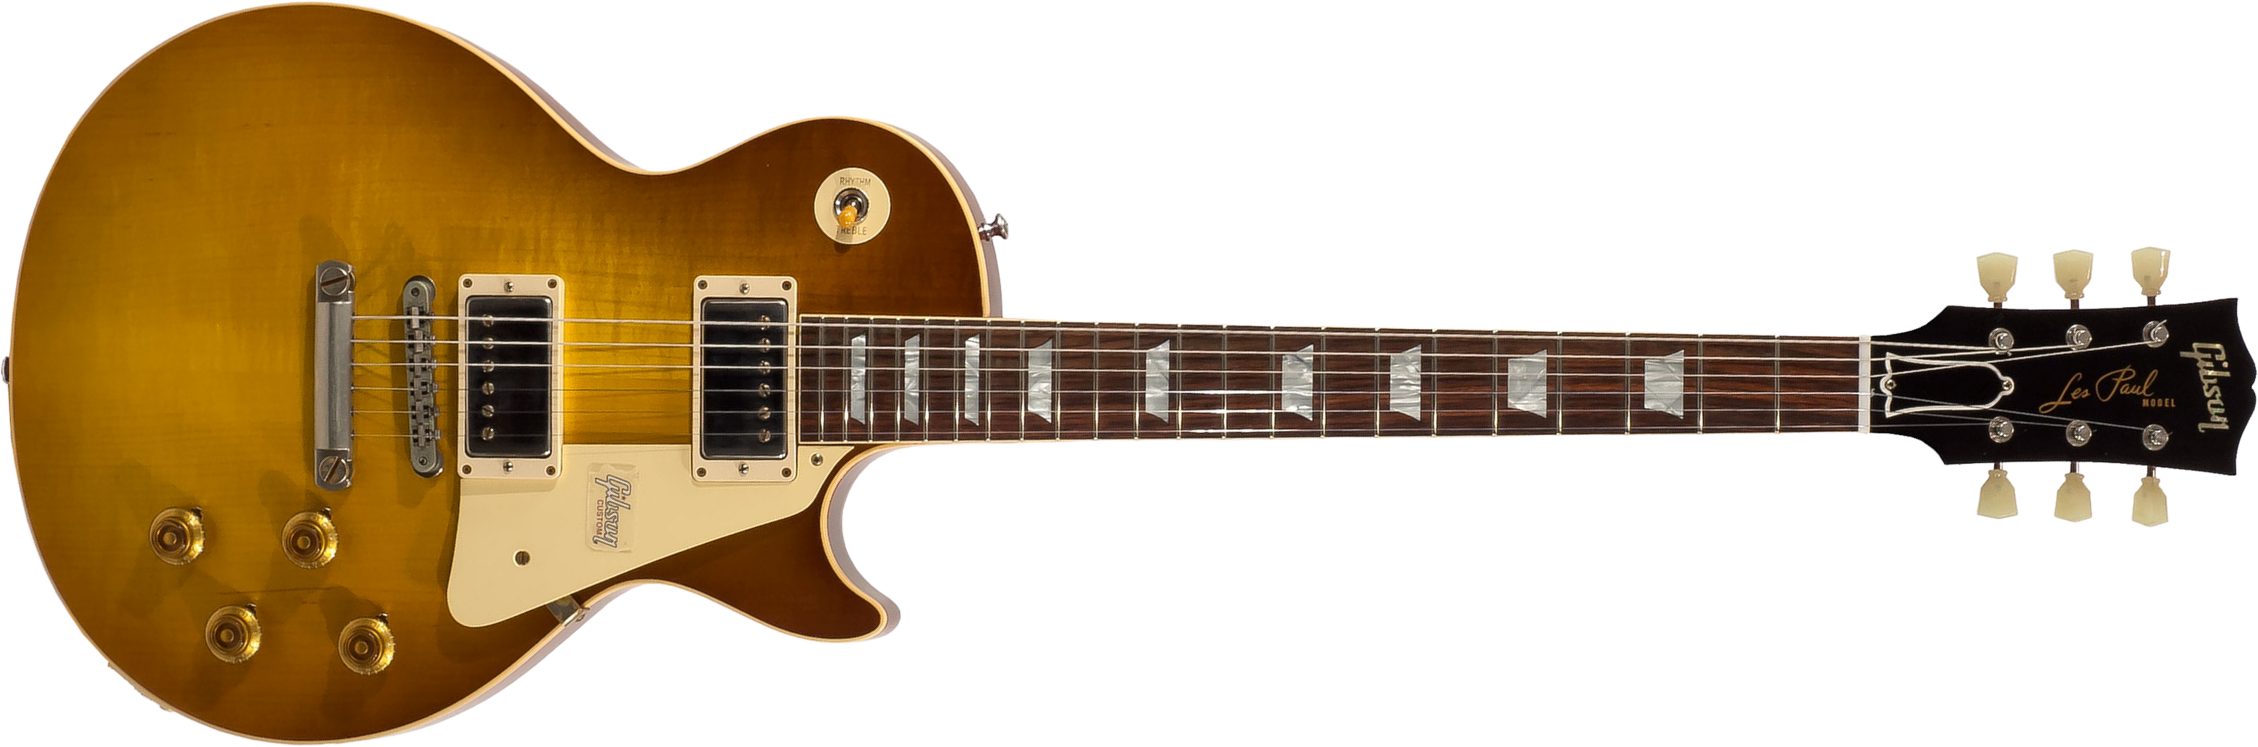 Gibson Custom Shop Les Paul Standard 1958 2h Ht Rw - Vos Royal Teaburst - Guitarra eléctrica de corte único. - Main picture